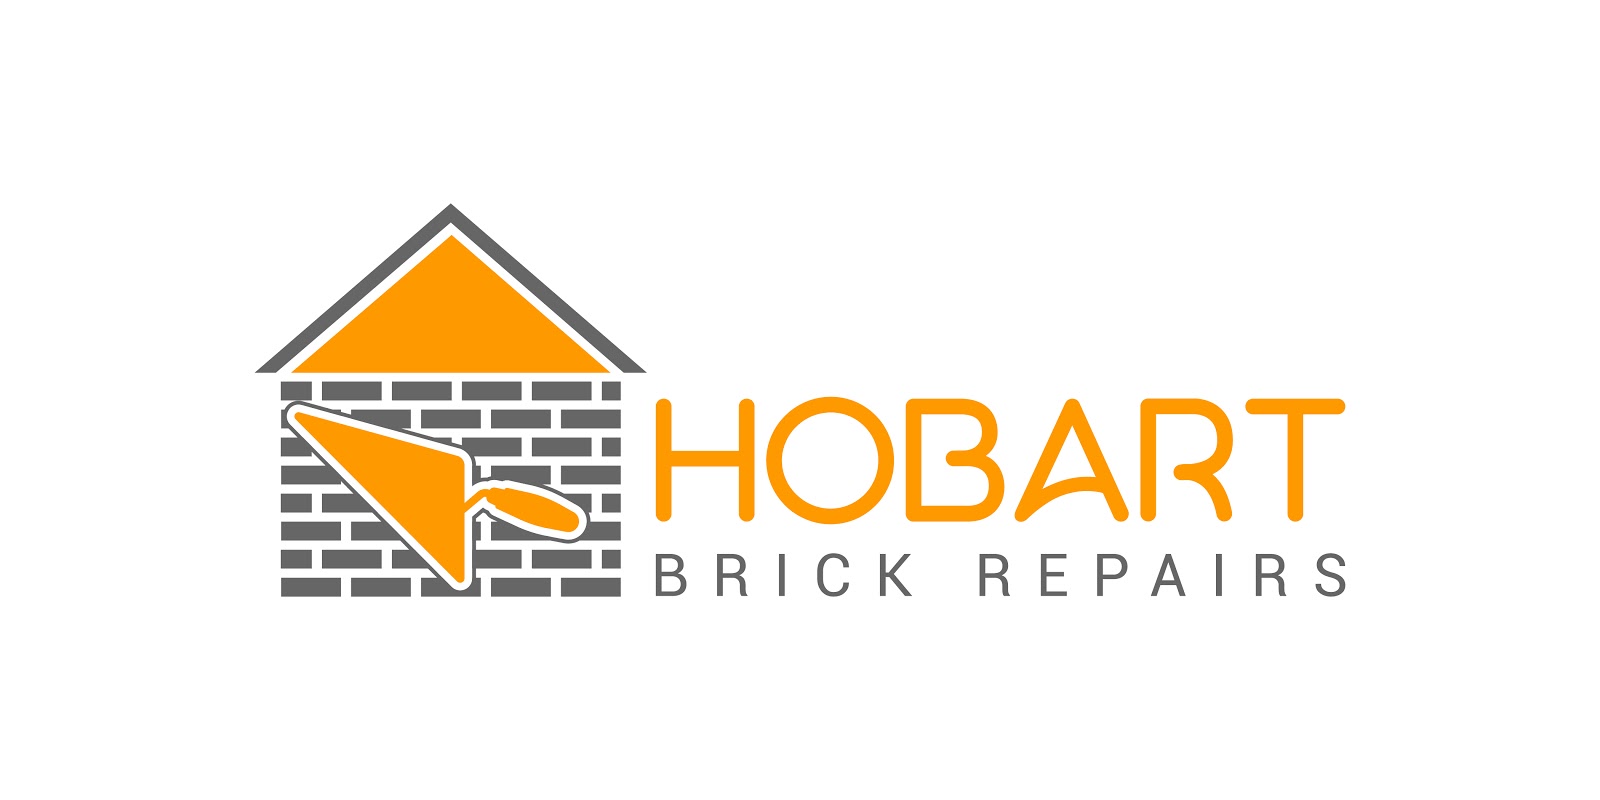 Hobart Brick Repairs | store | 8/64 Bellevue Parade, New Town, Tasmania 7008, Australia | 0361460379 OR +61 (03) 6146 0379